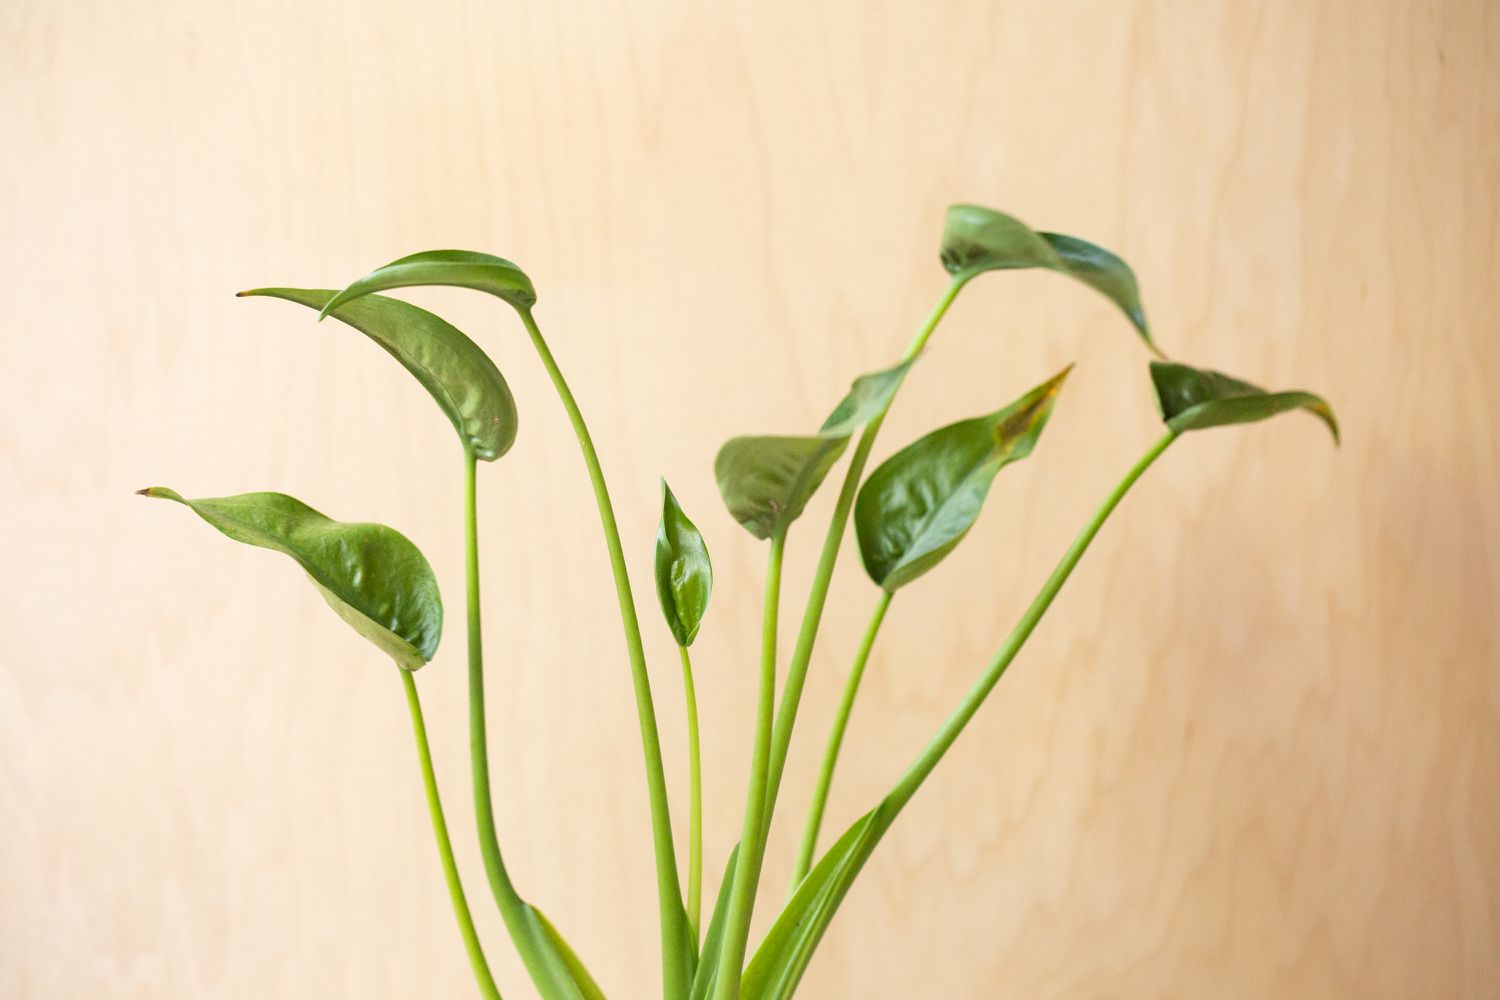 Alocasia tuny planta bailarina de tallos largos y hojas puntiagudas en forma de copa